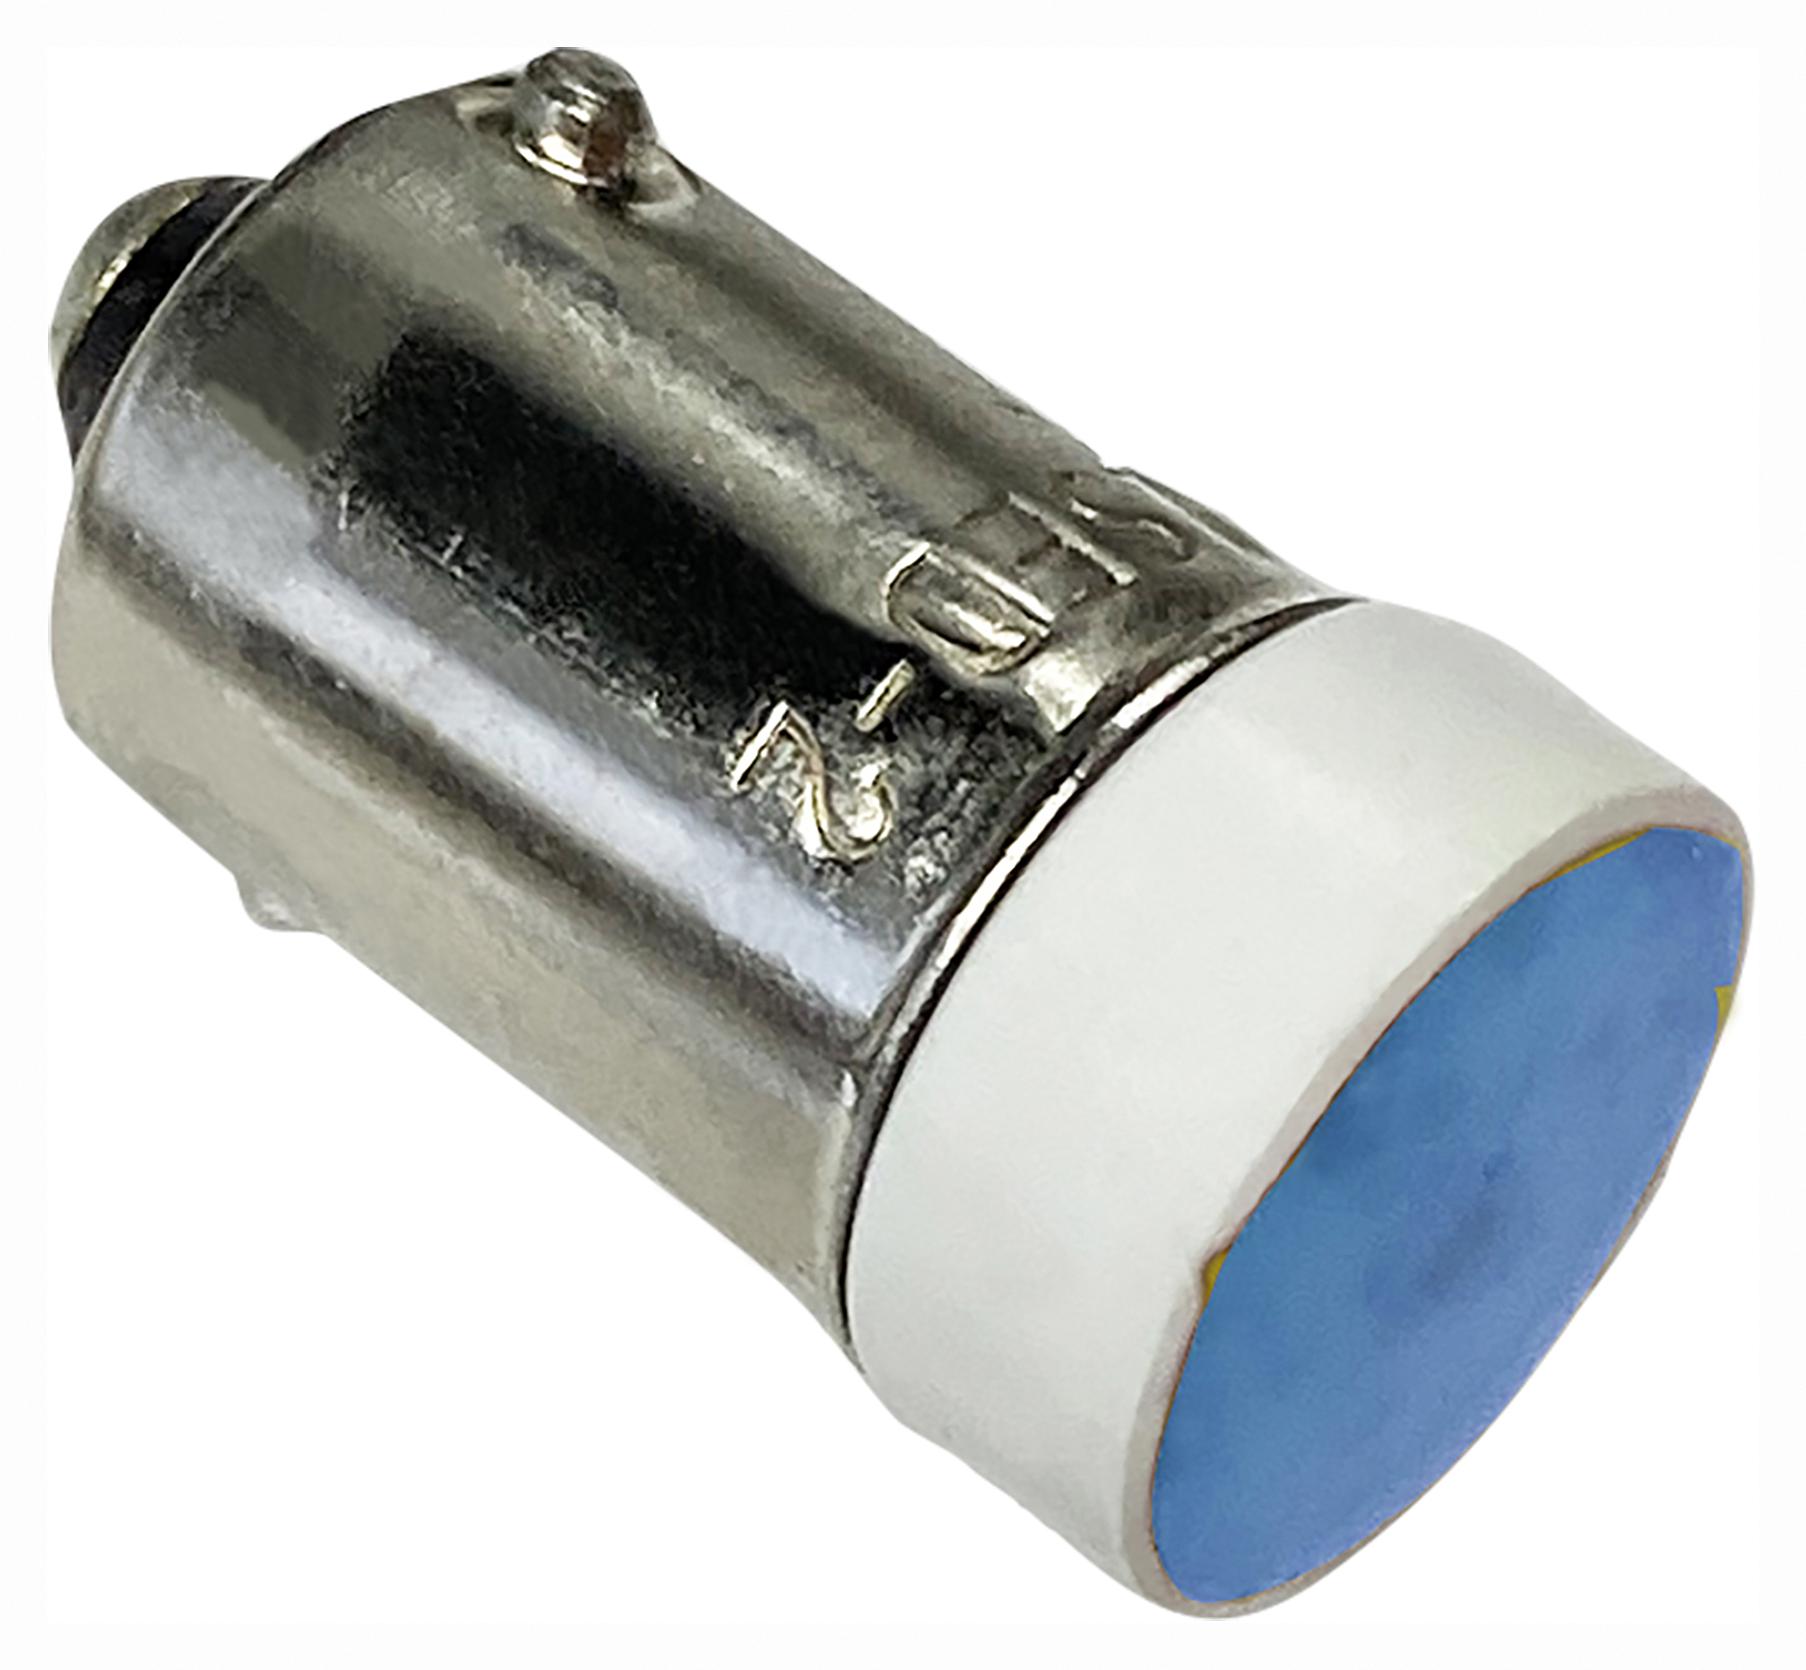 LSED-2SN SMALL LED INDICATOR, BLUE, 24V, BA9S/13 IDEC